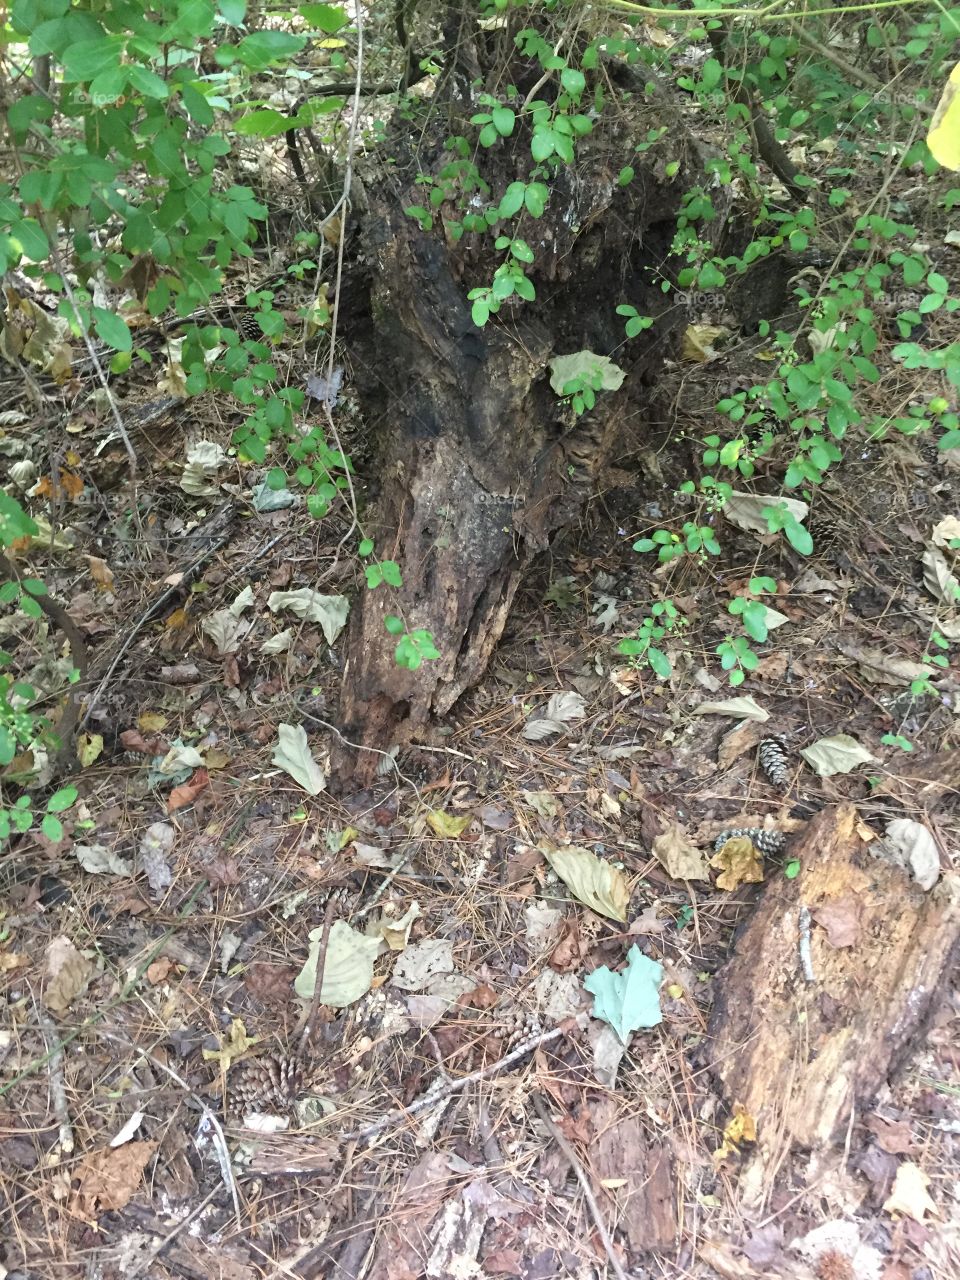 Dead tree looking like a fox